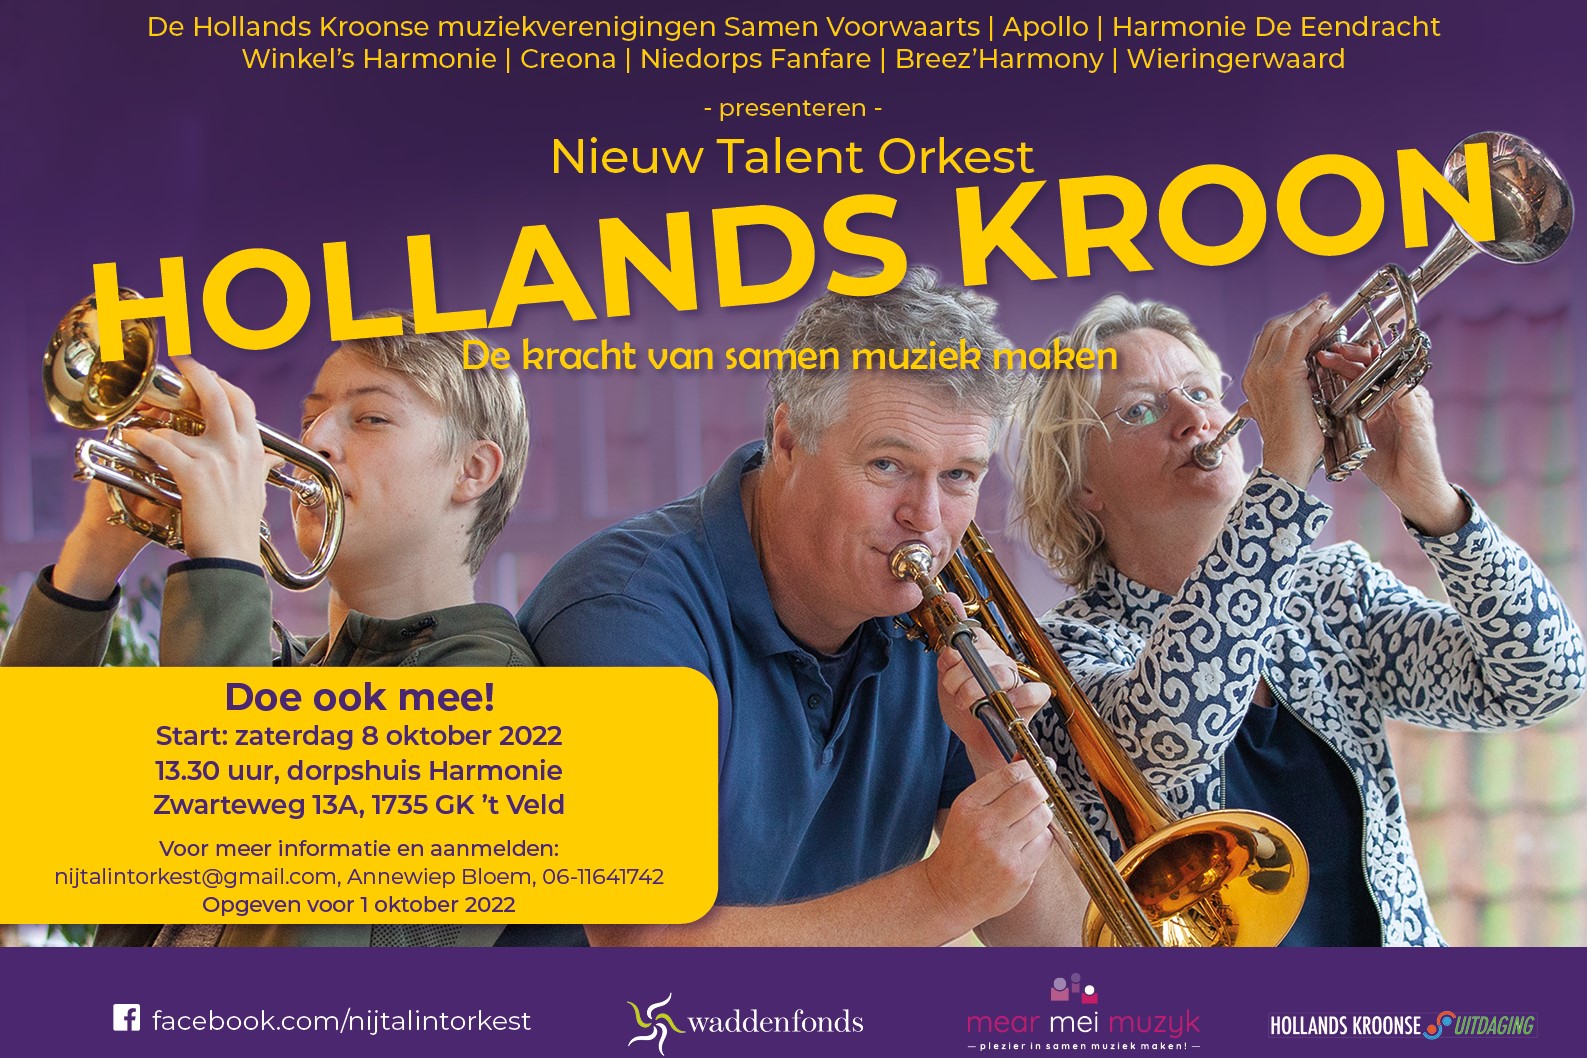 Flyer Nieuw Talent Orkestaaa